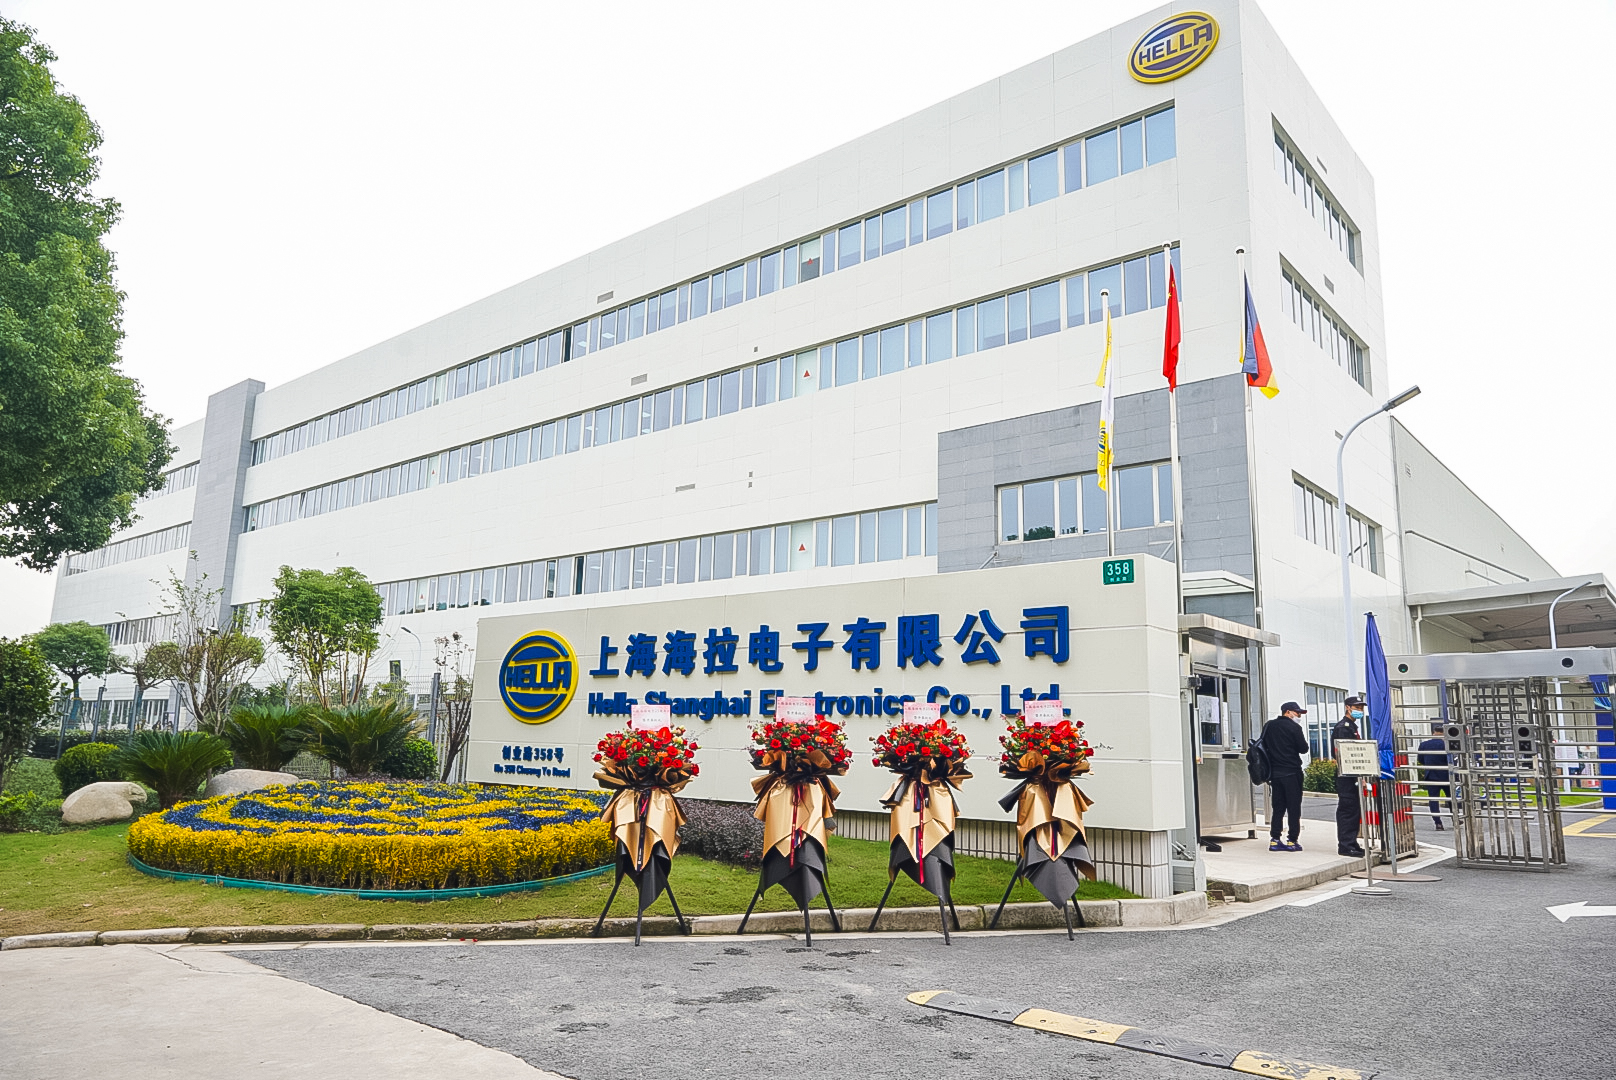 HELLA удваивает производственные мощности на своей производственной площадке в Шанхае